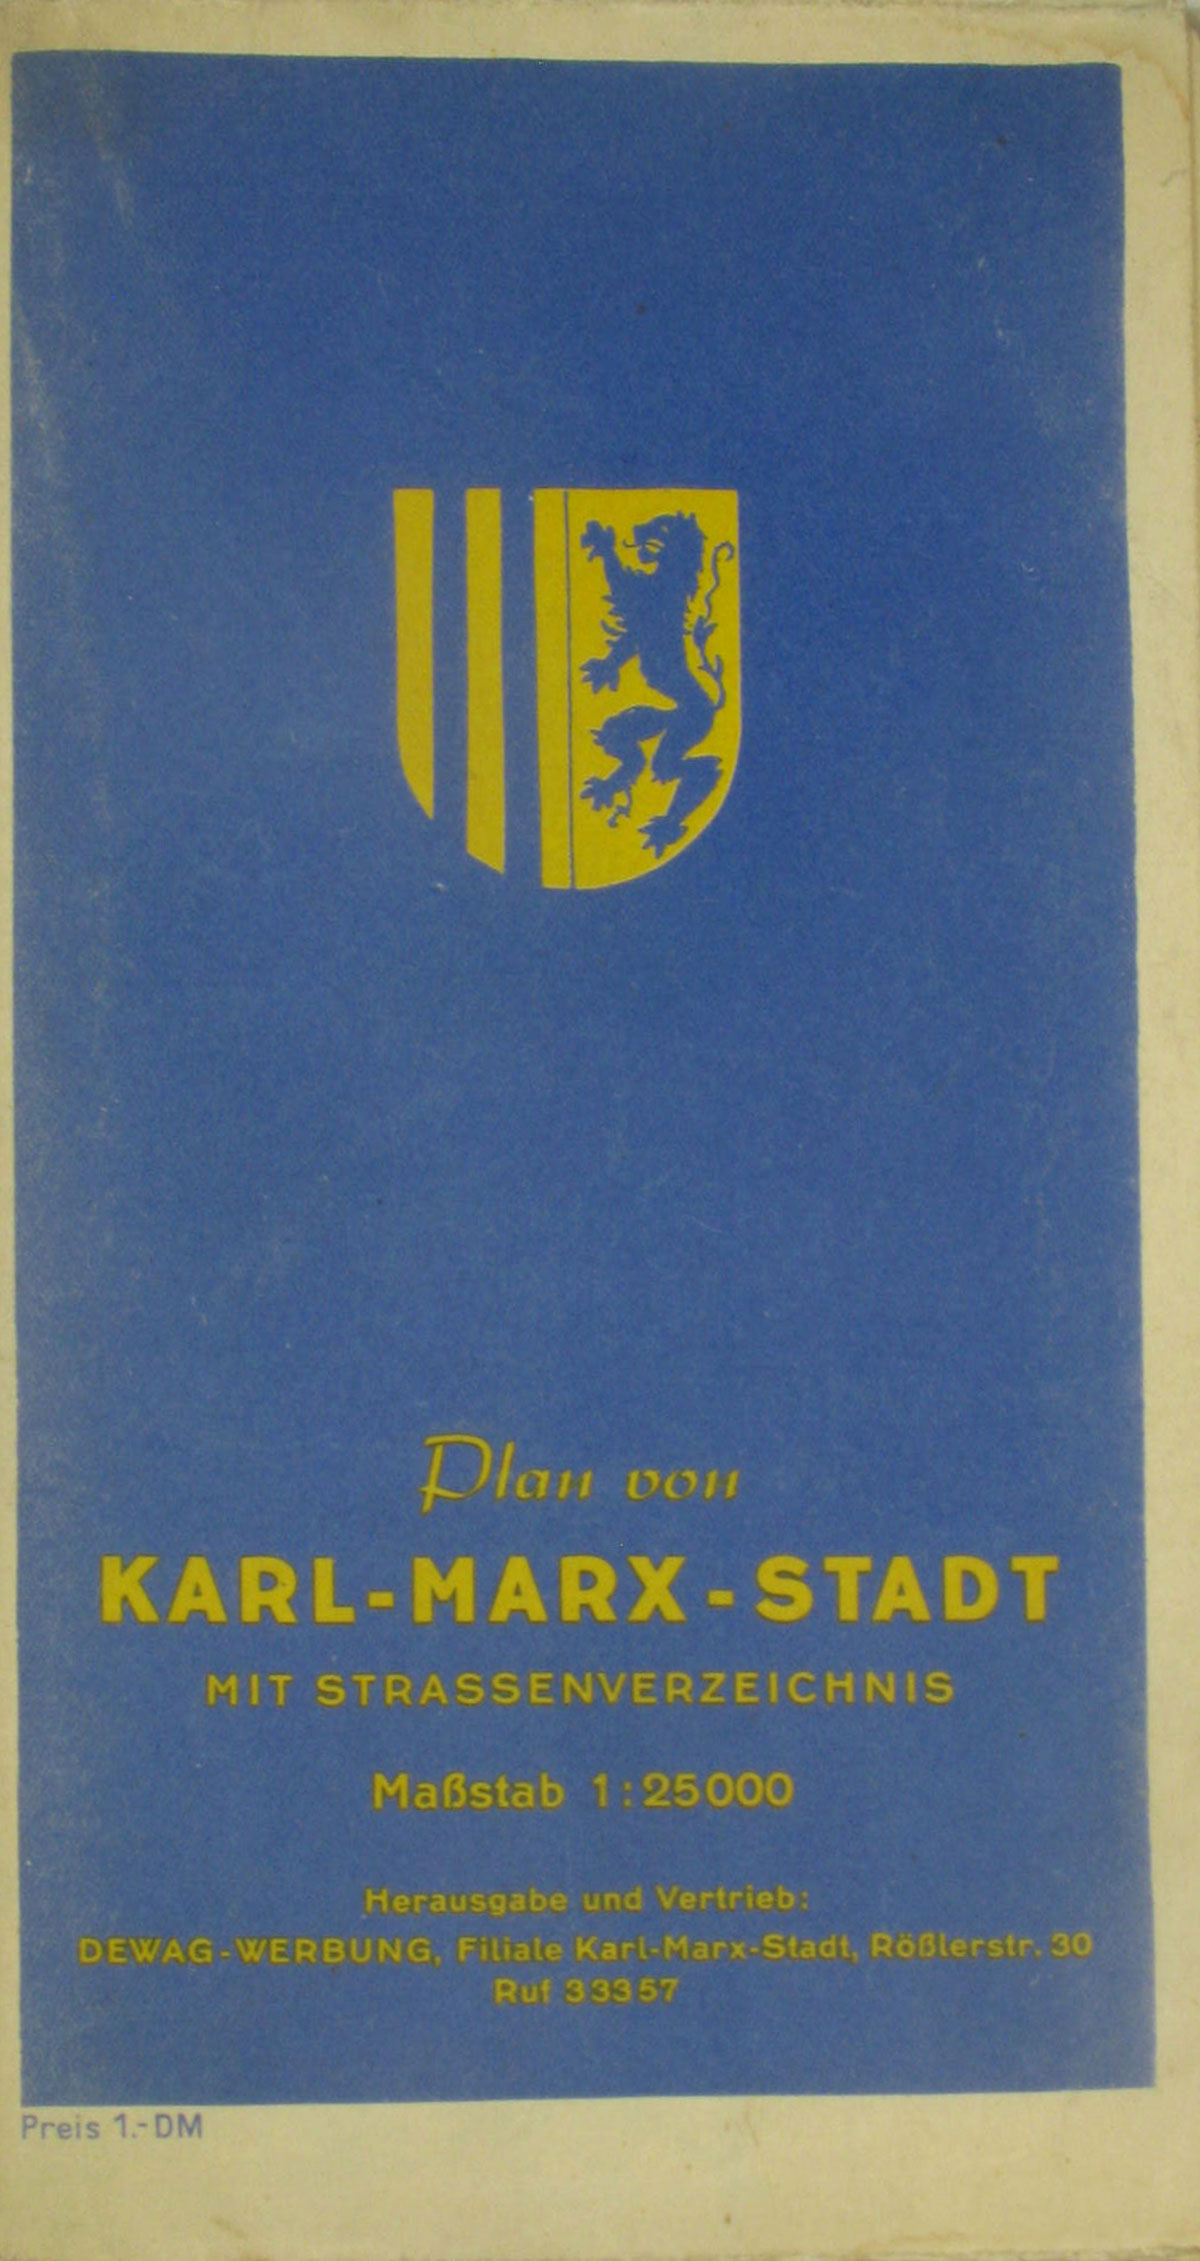   Plan von Karl-Marx-Stadt mit Straßenverzeichnis 